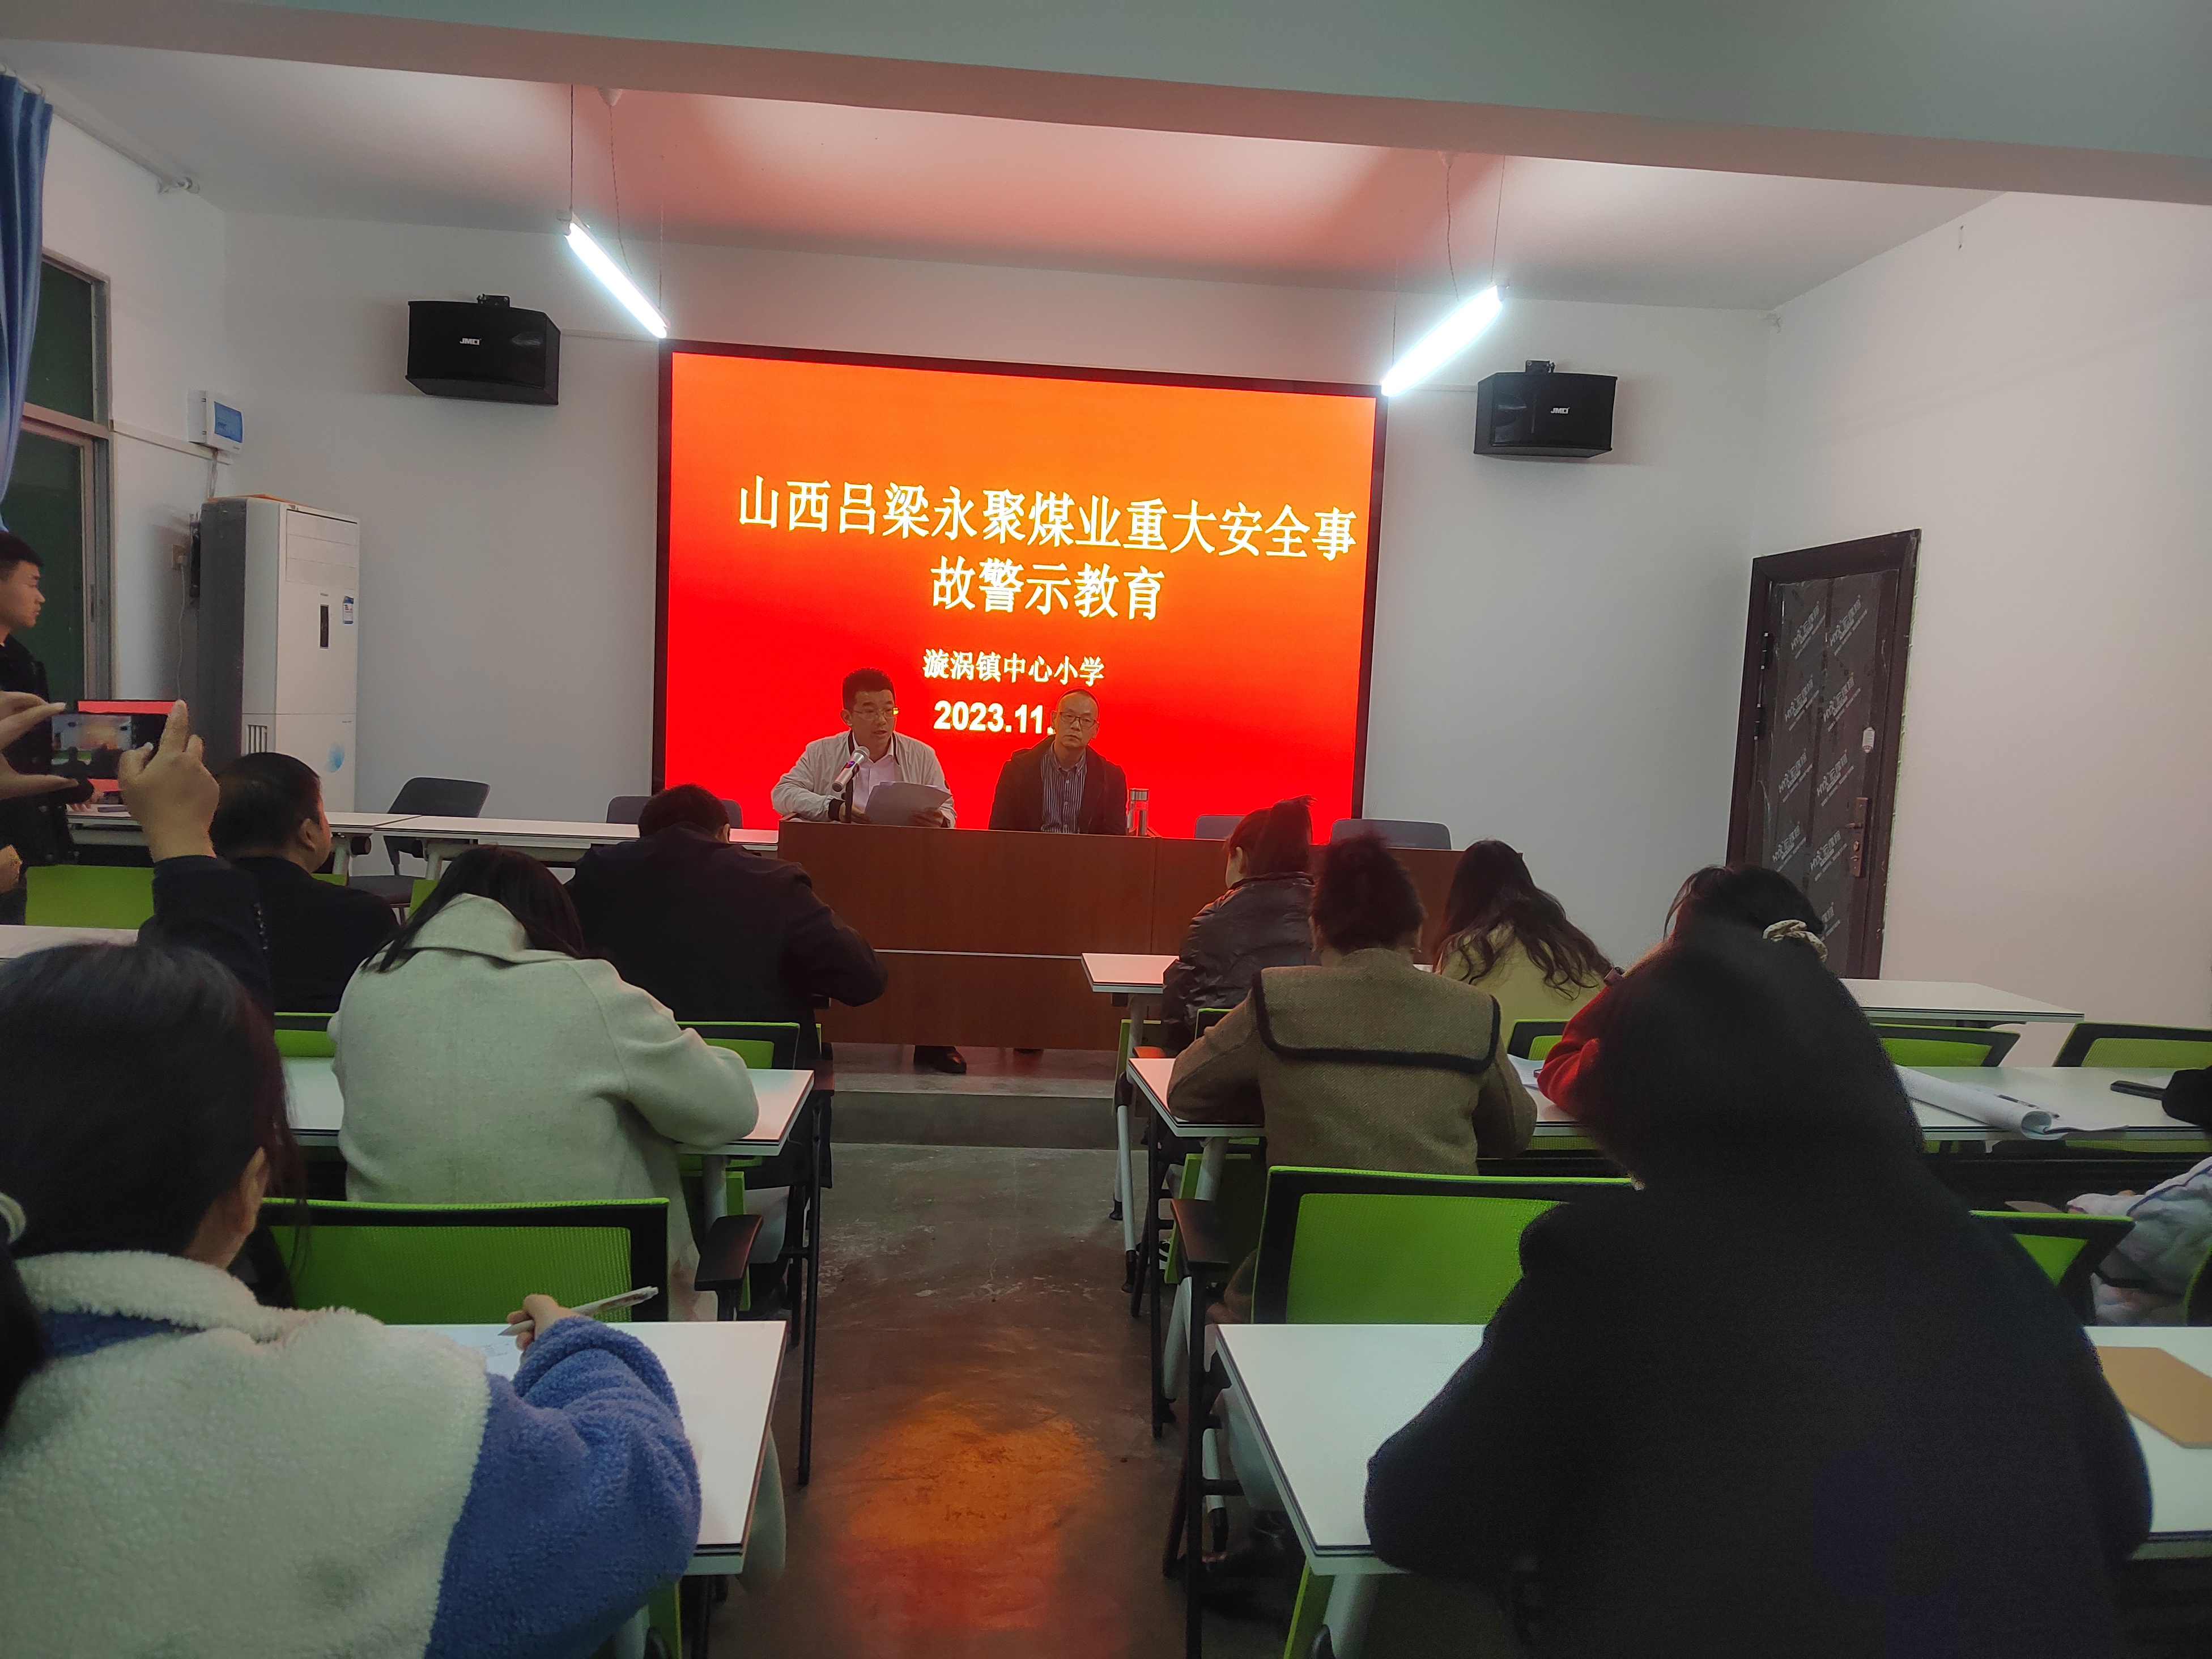 汉阴县漩涡镇中心小学召开平安建设双提升暨安全稳定警示教育大会